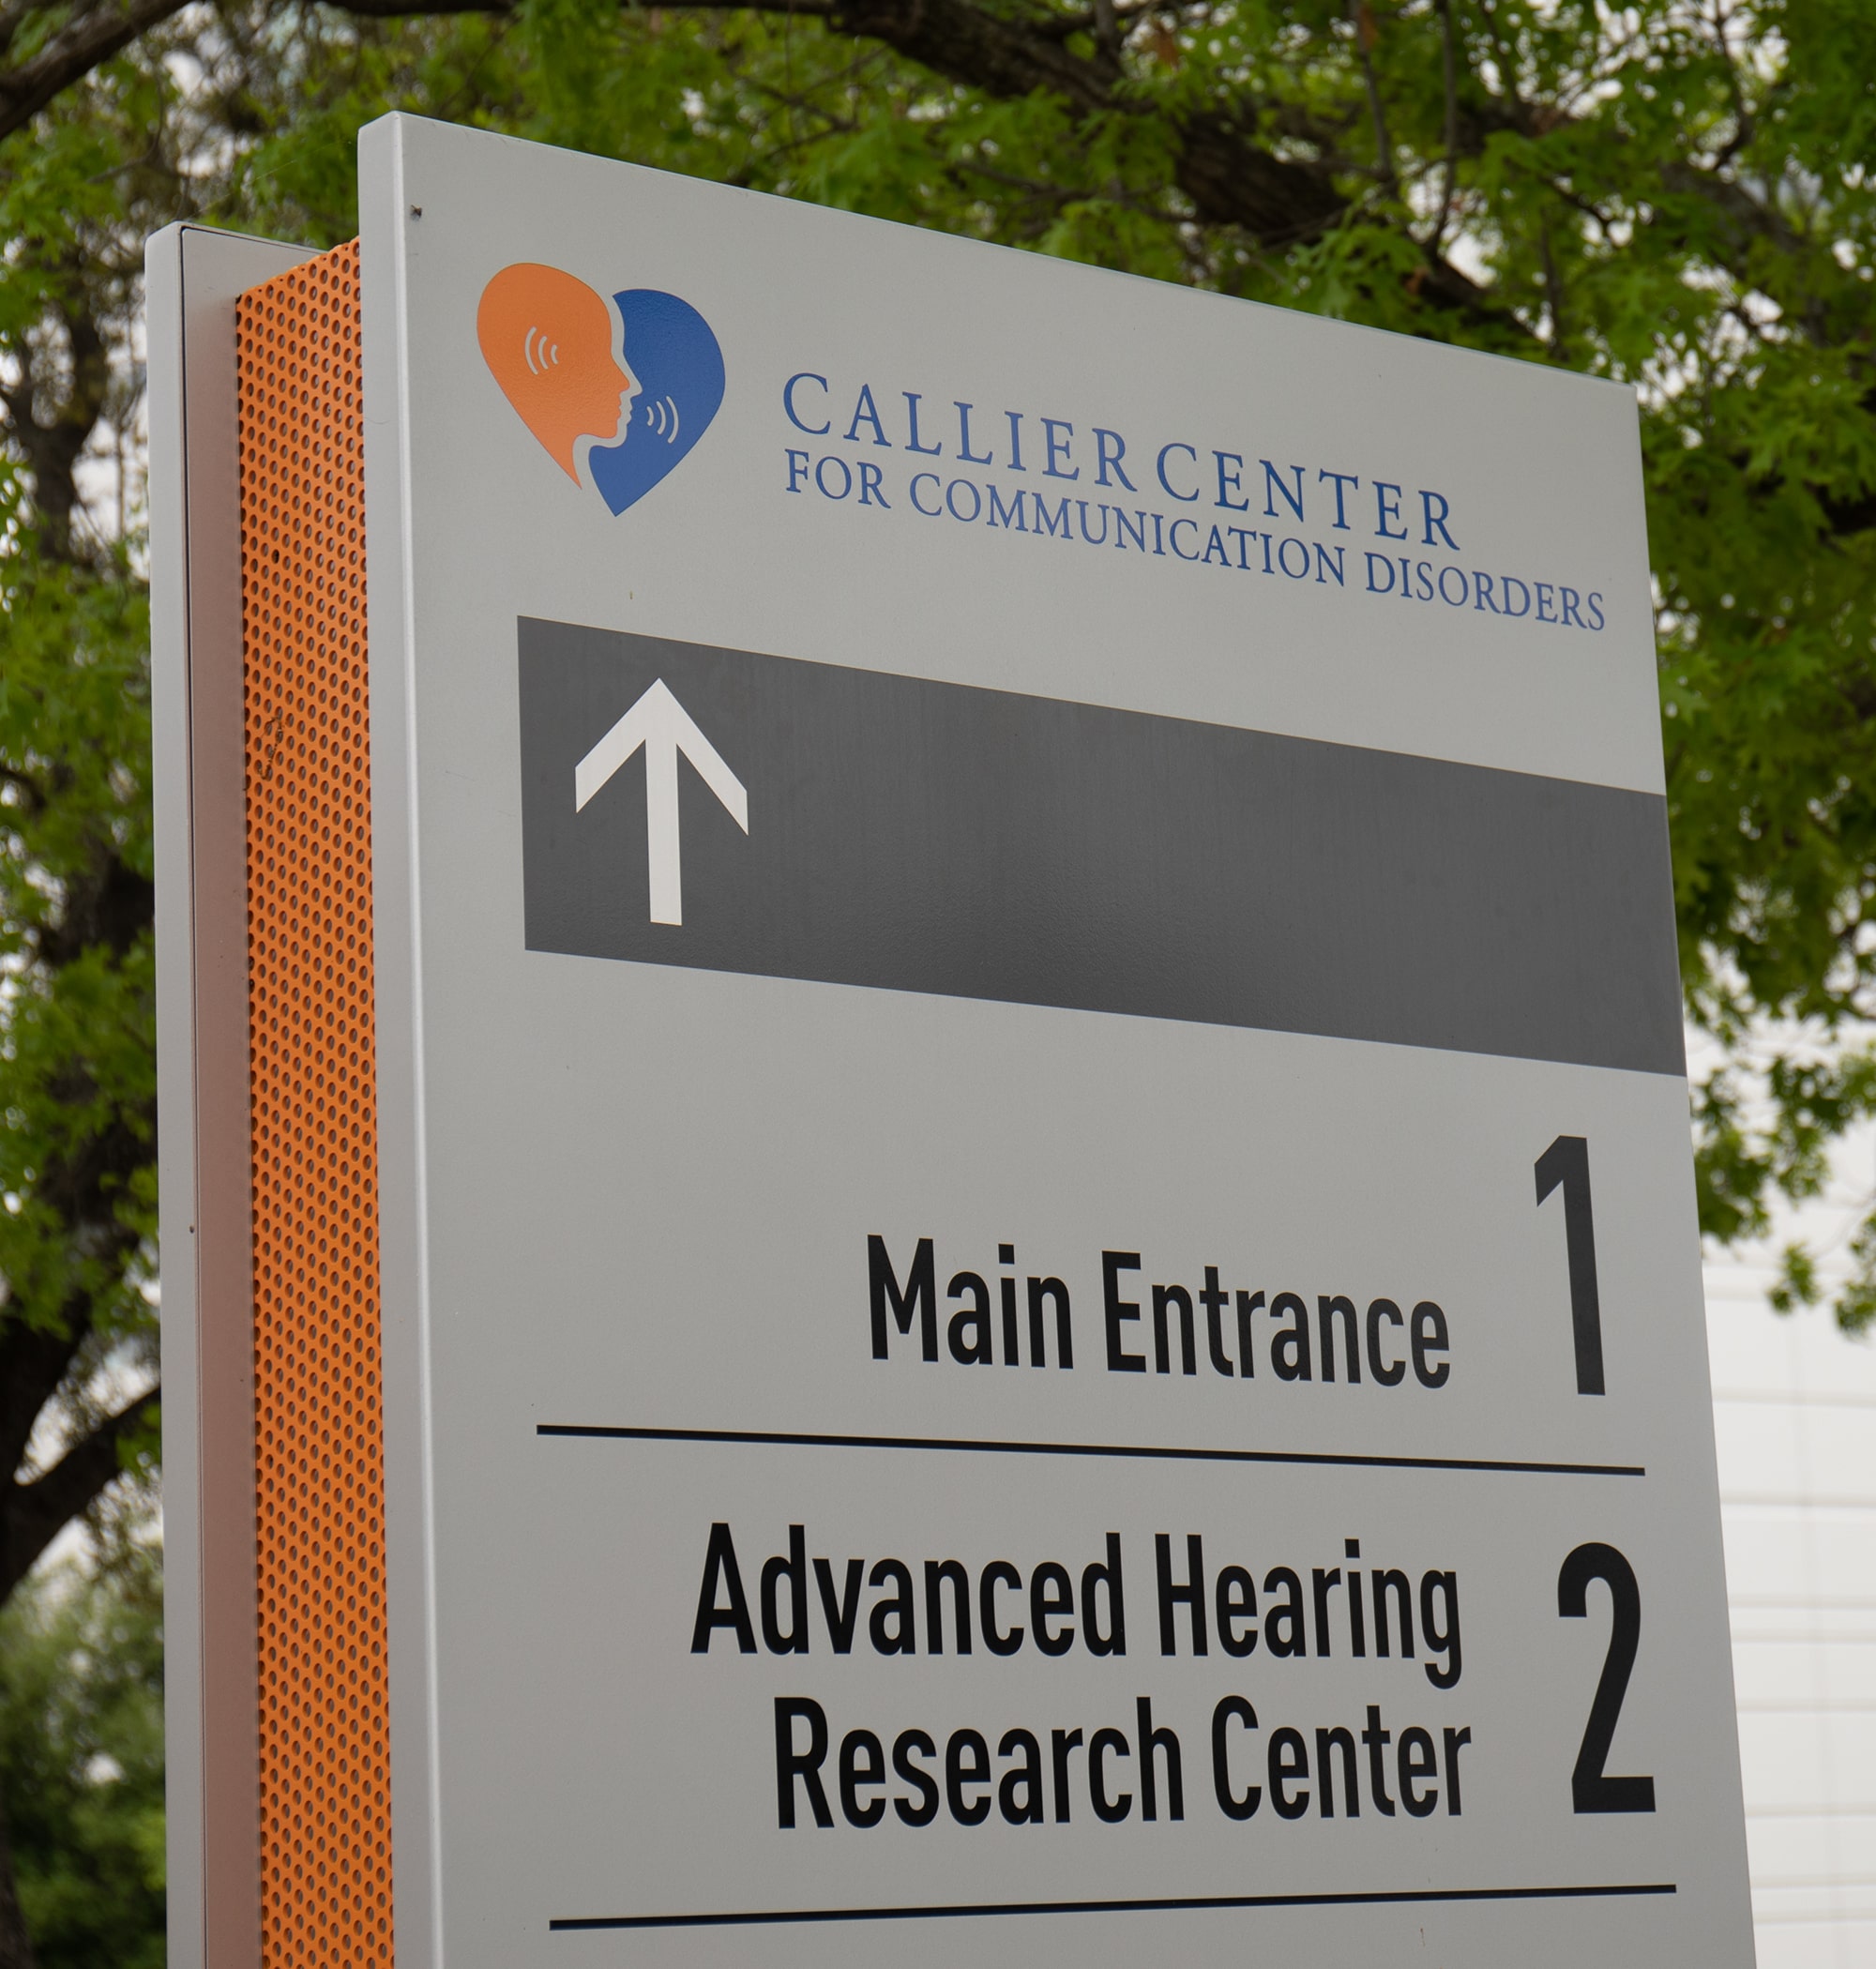 Callier Center for Communication Disorders - UT Dallas - Allyn Media